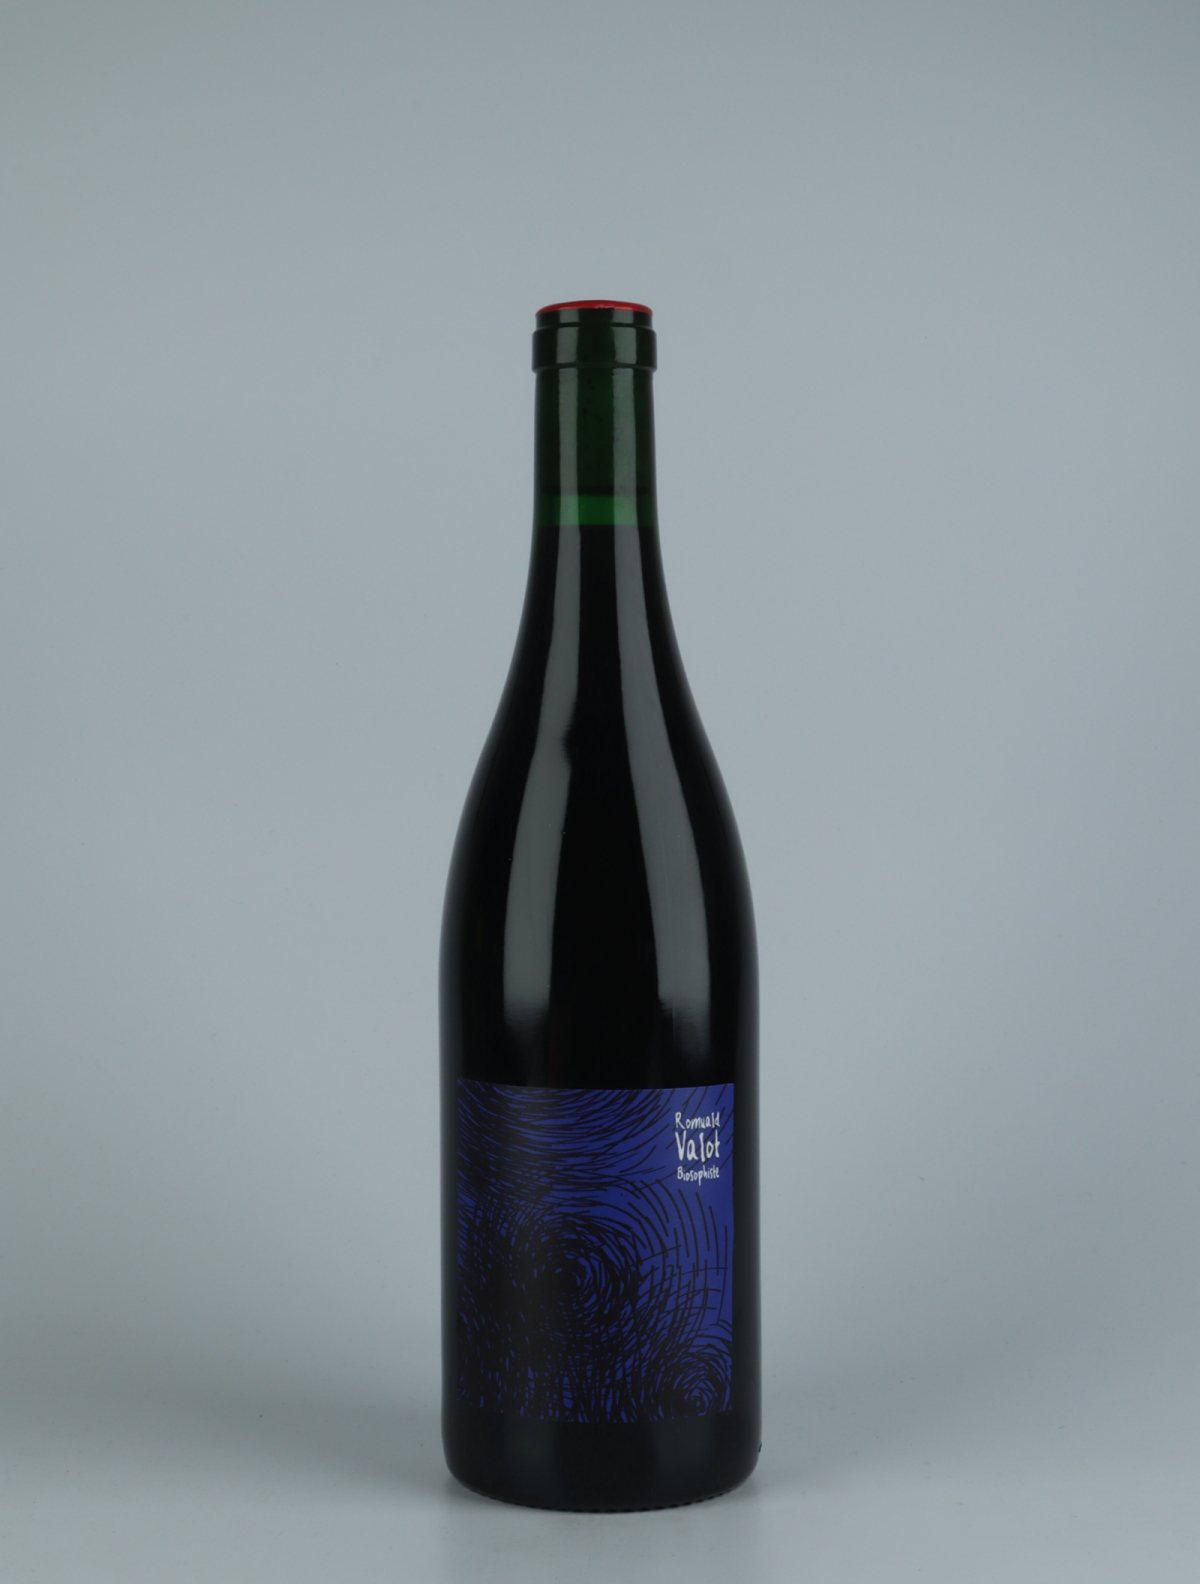 En flaske 2020 Côte de Brouilly Rødvin fra Romuald Valot, Beaujolais i Frankrig